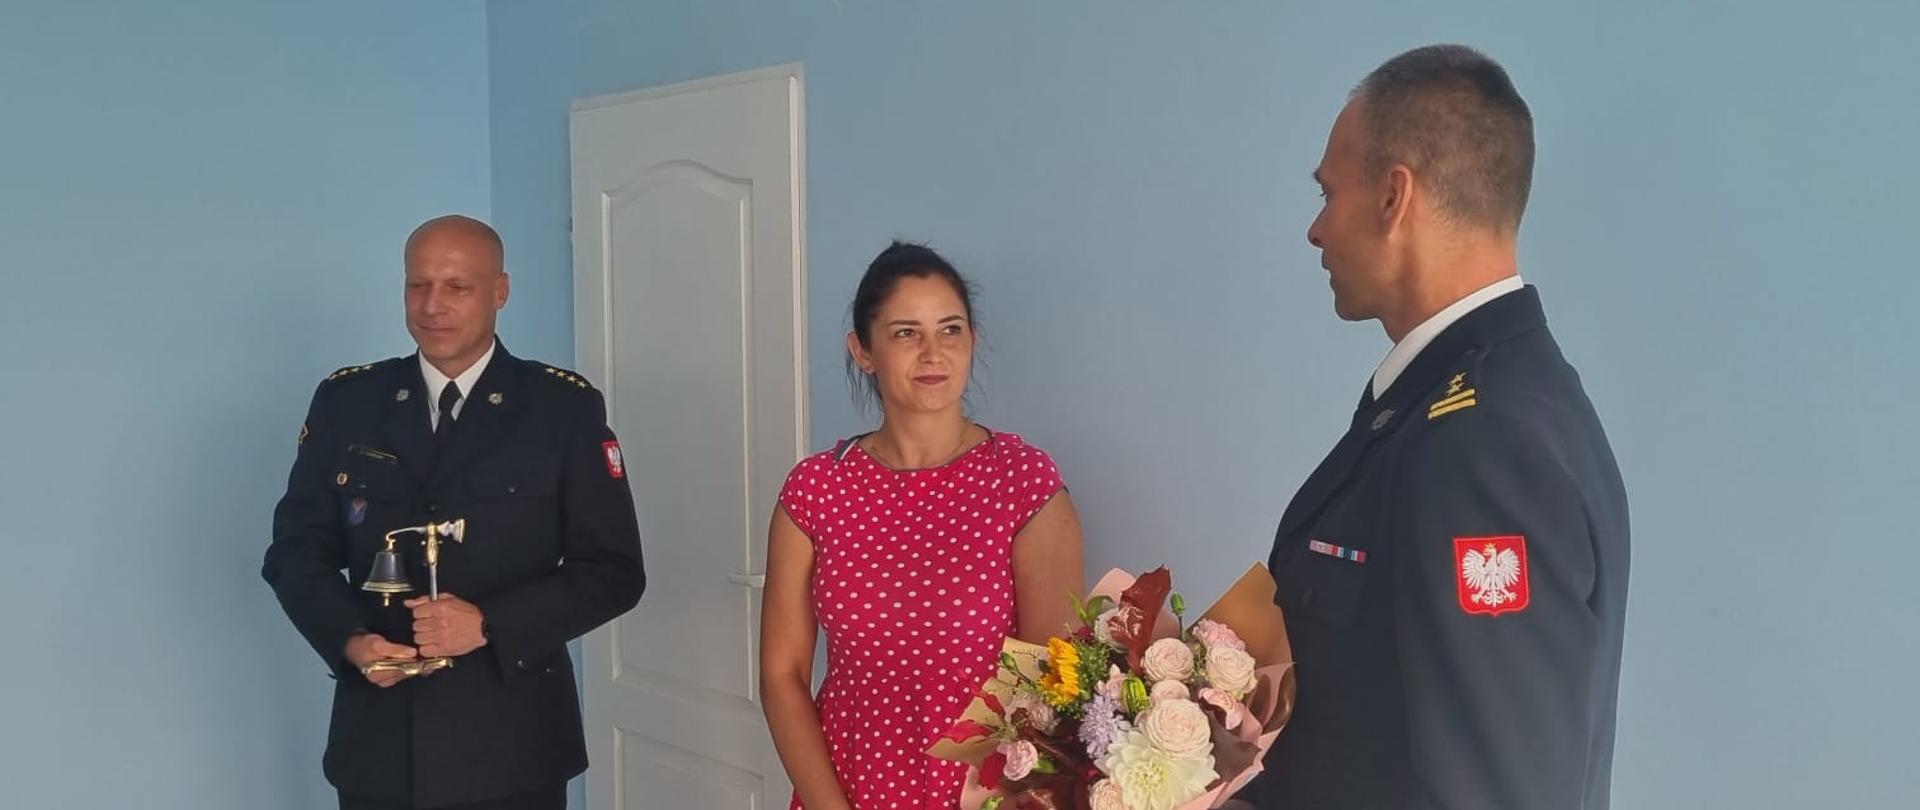 Zdjęcie przedstawia 3 osoby, z czego 2 to strażacy, a trzecia to kobieta w różowej sukience w białe kropki. Komendant Powiatowy PSP przekazuje bukiet kwiatów dla żony odchodzącego na emeryturę strażaka